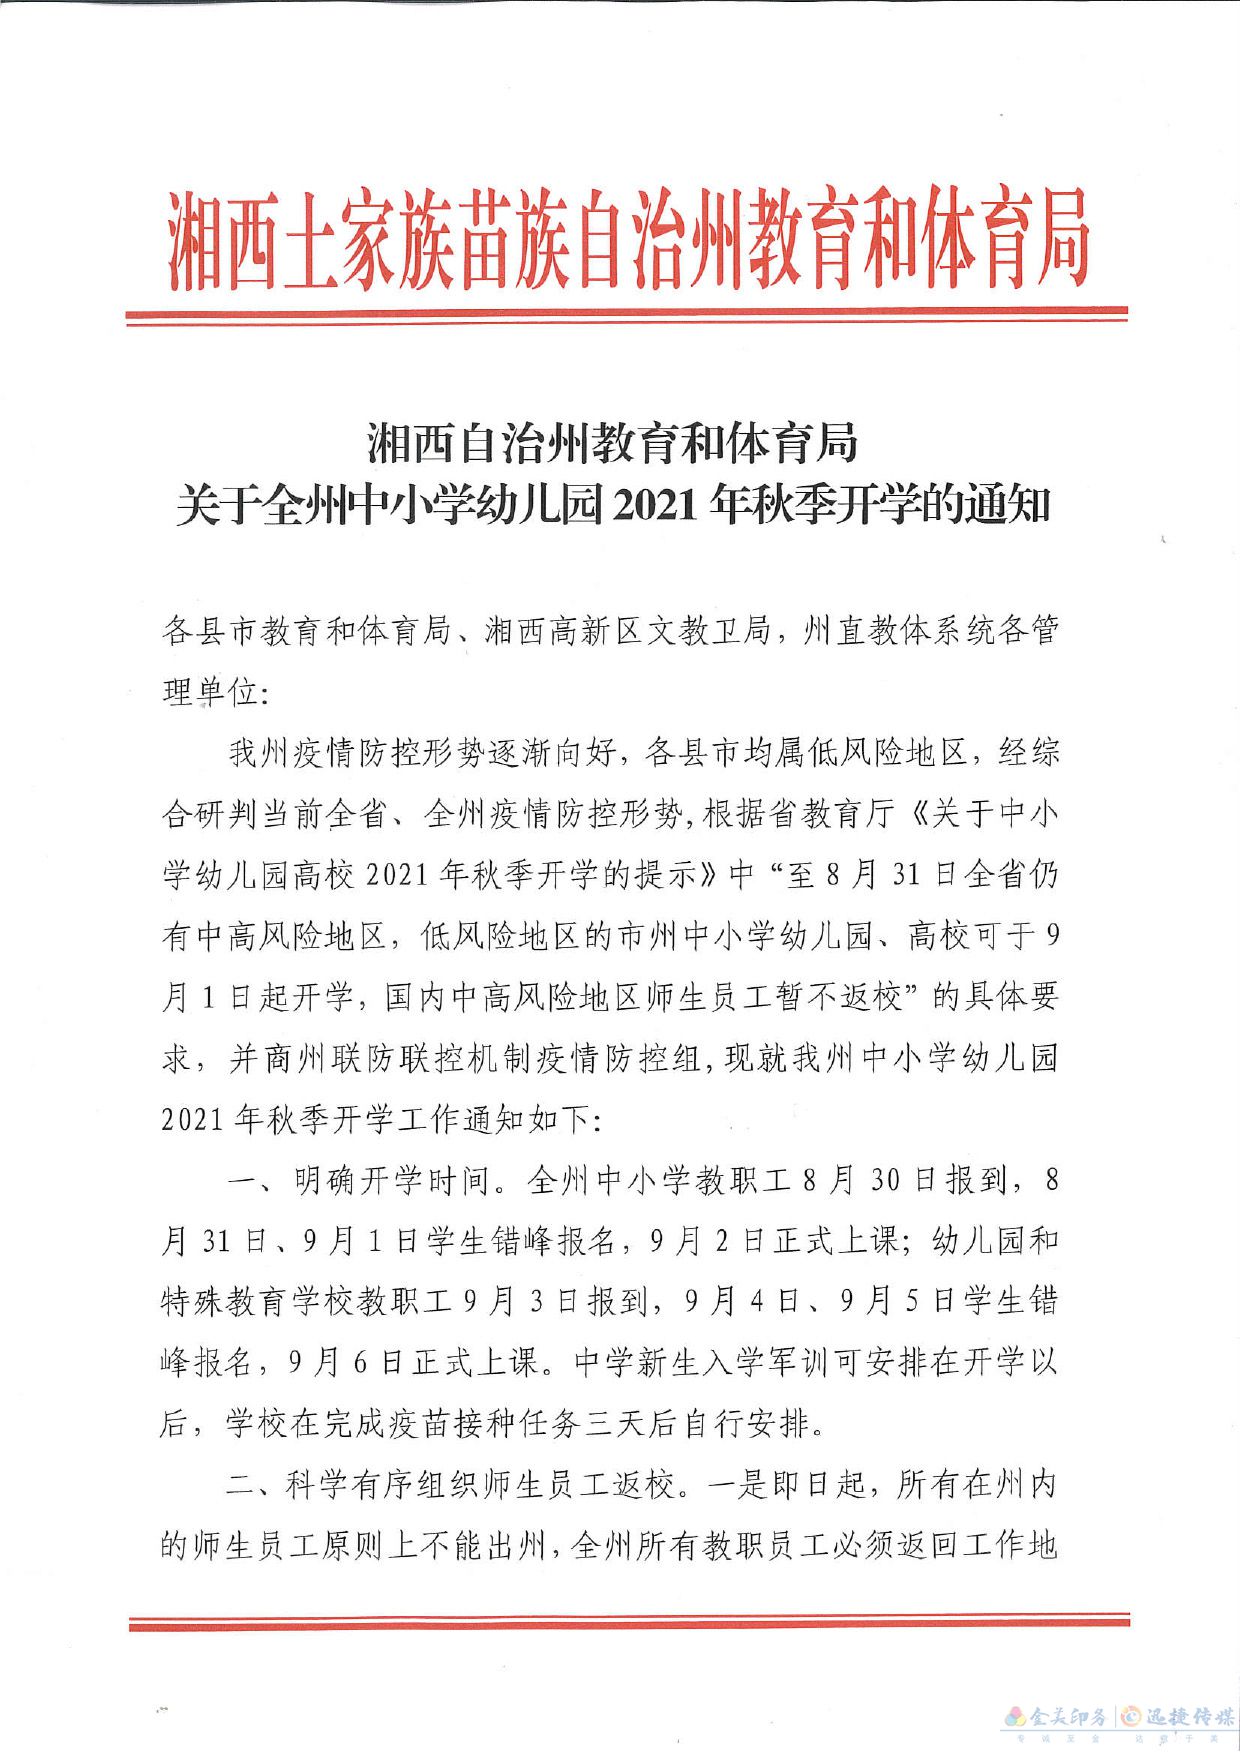 关于湘西州中小学幼儿园2021年秋季开学的通知(图2)